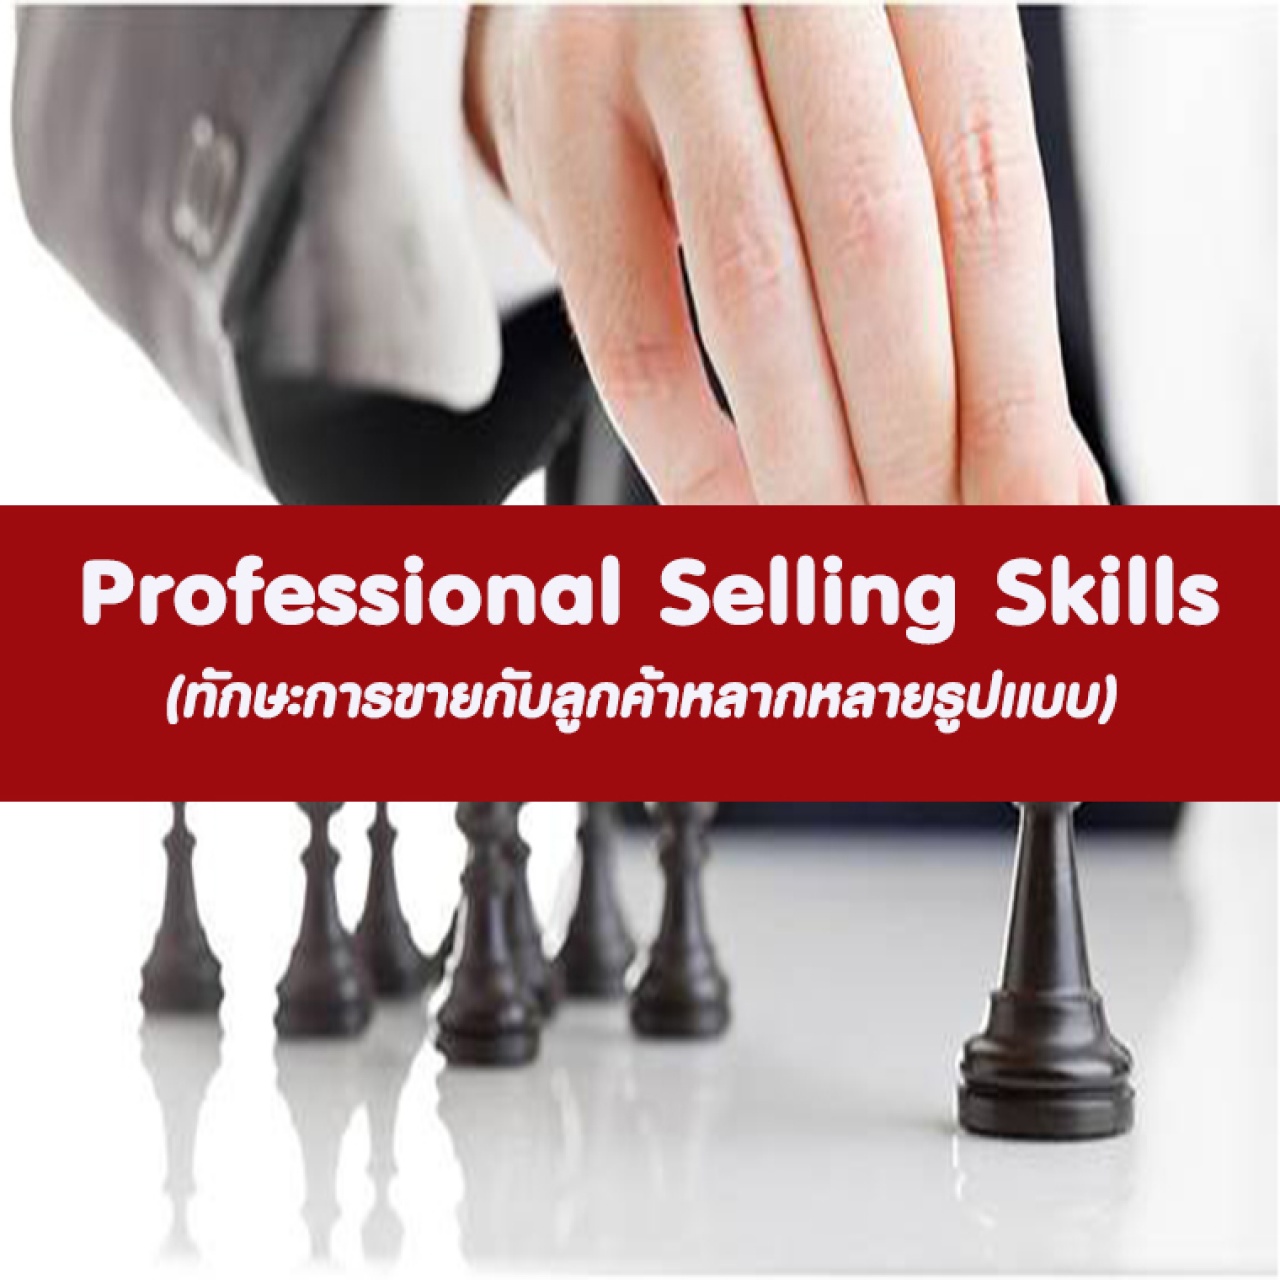 หลักสูตร Professional Selling Skills (11 มิ.ย. 63)